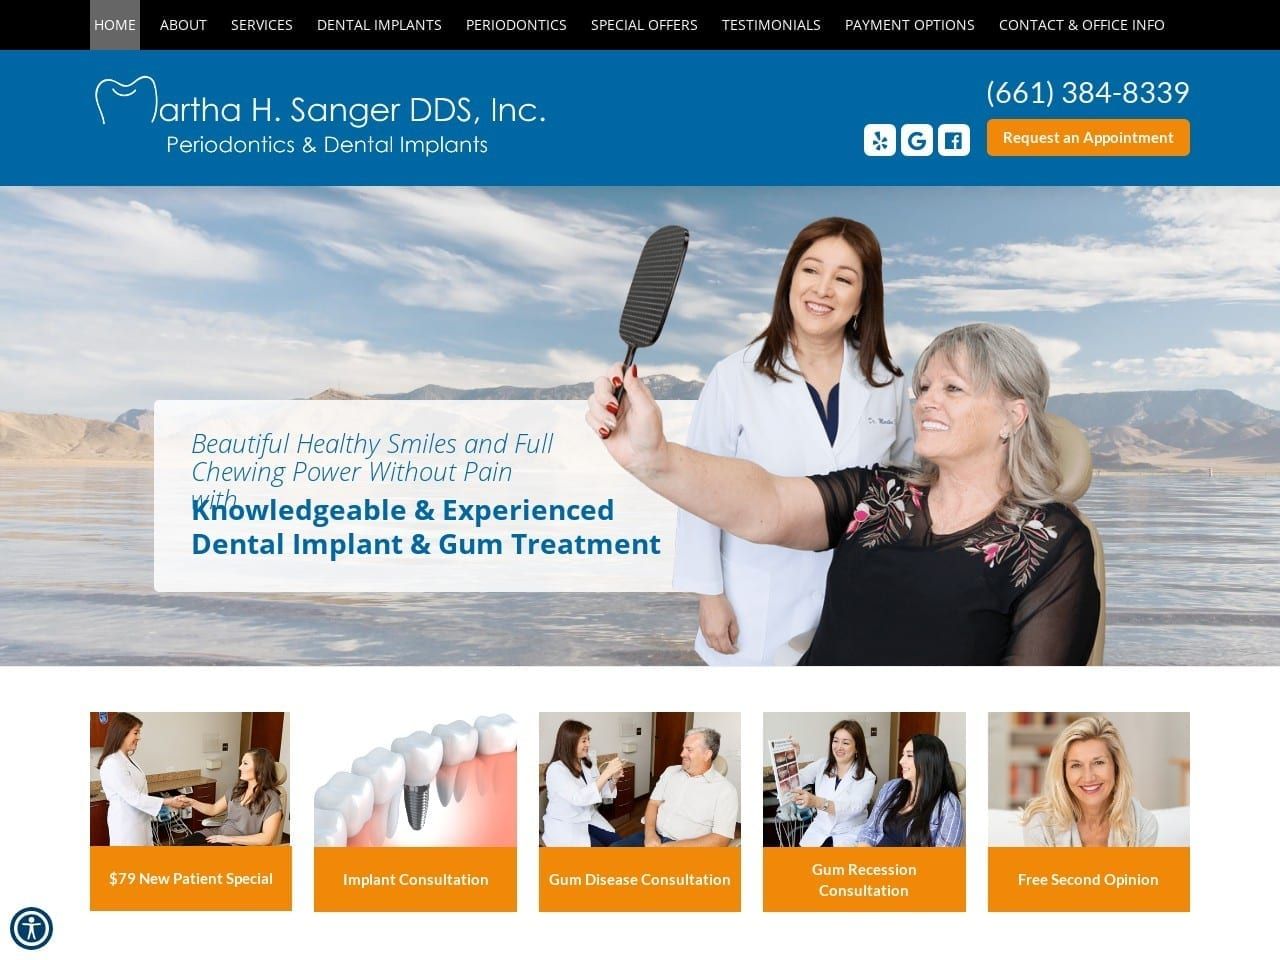 Martha H Sanger Inc Website Screenshot from sangerdds.com